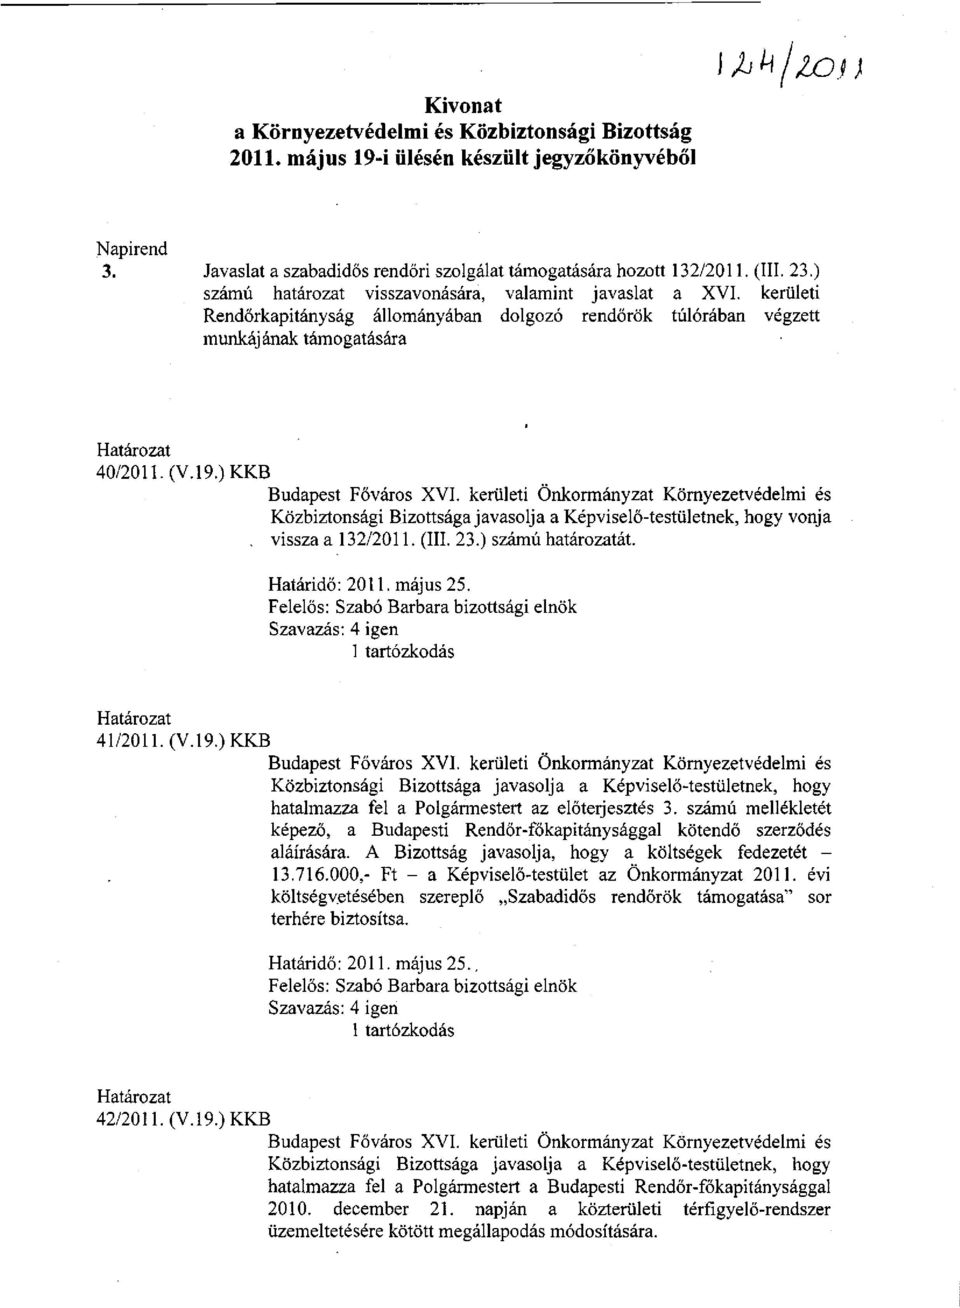 ) KKB Budapest Főváros XVI. kerületi Önkormányzat Környezetvédelmi és Közbiztonsági Bizottsága javasolja a Képviselő-testületnek, hogy vonja. vissza a 132/2011. (III. 23.) számú határozatát.